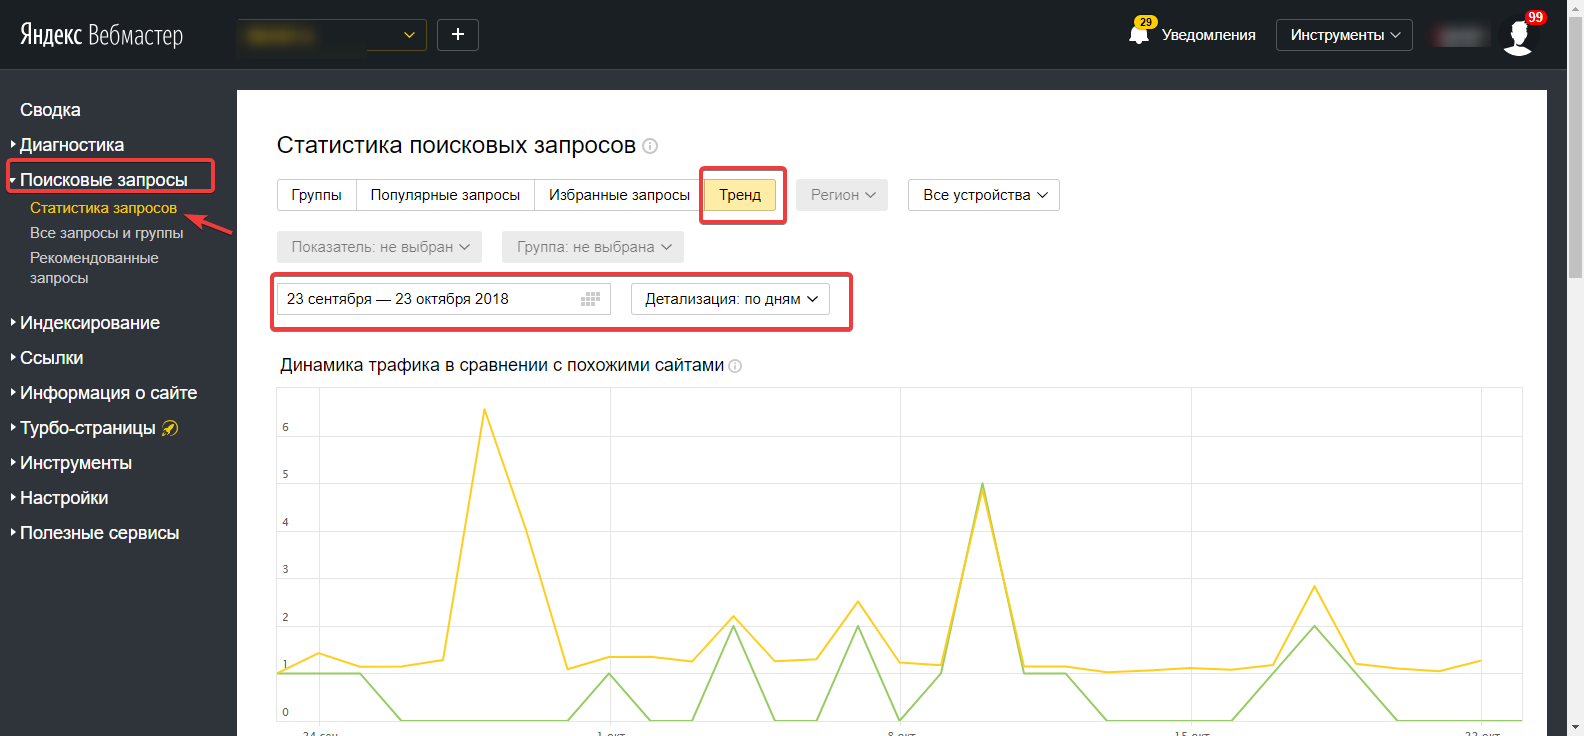 Статистика поисковых запросов в Яндекс.Вебмастере